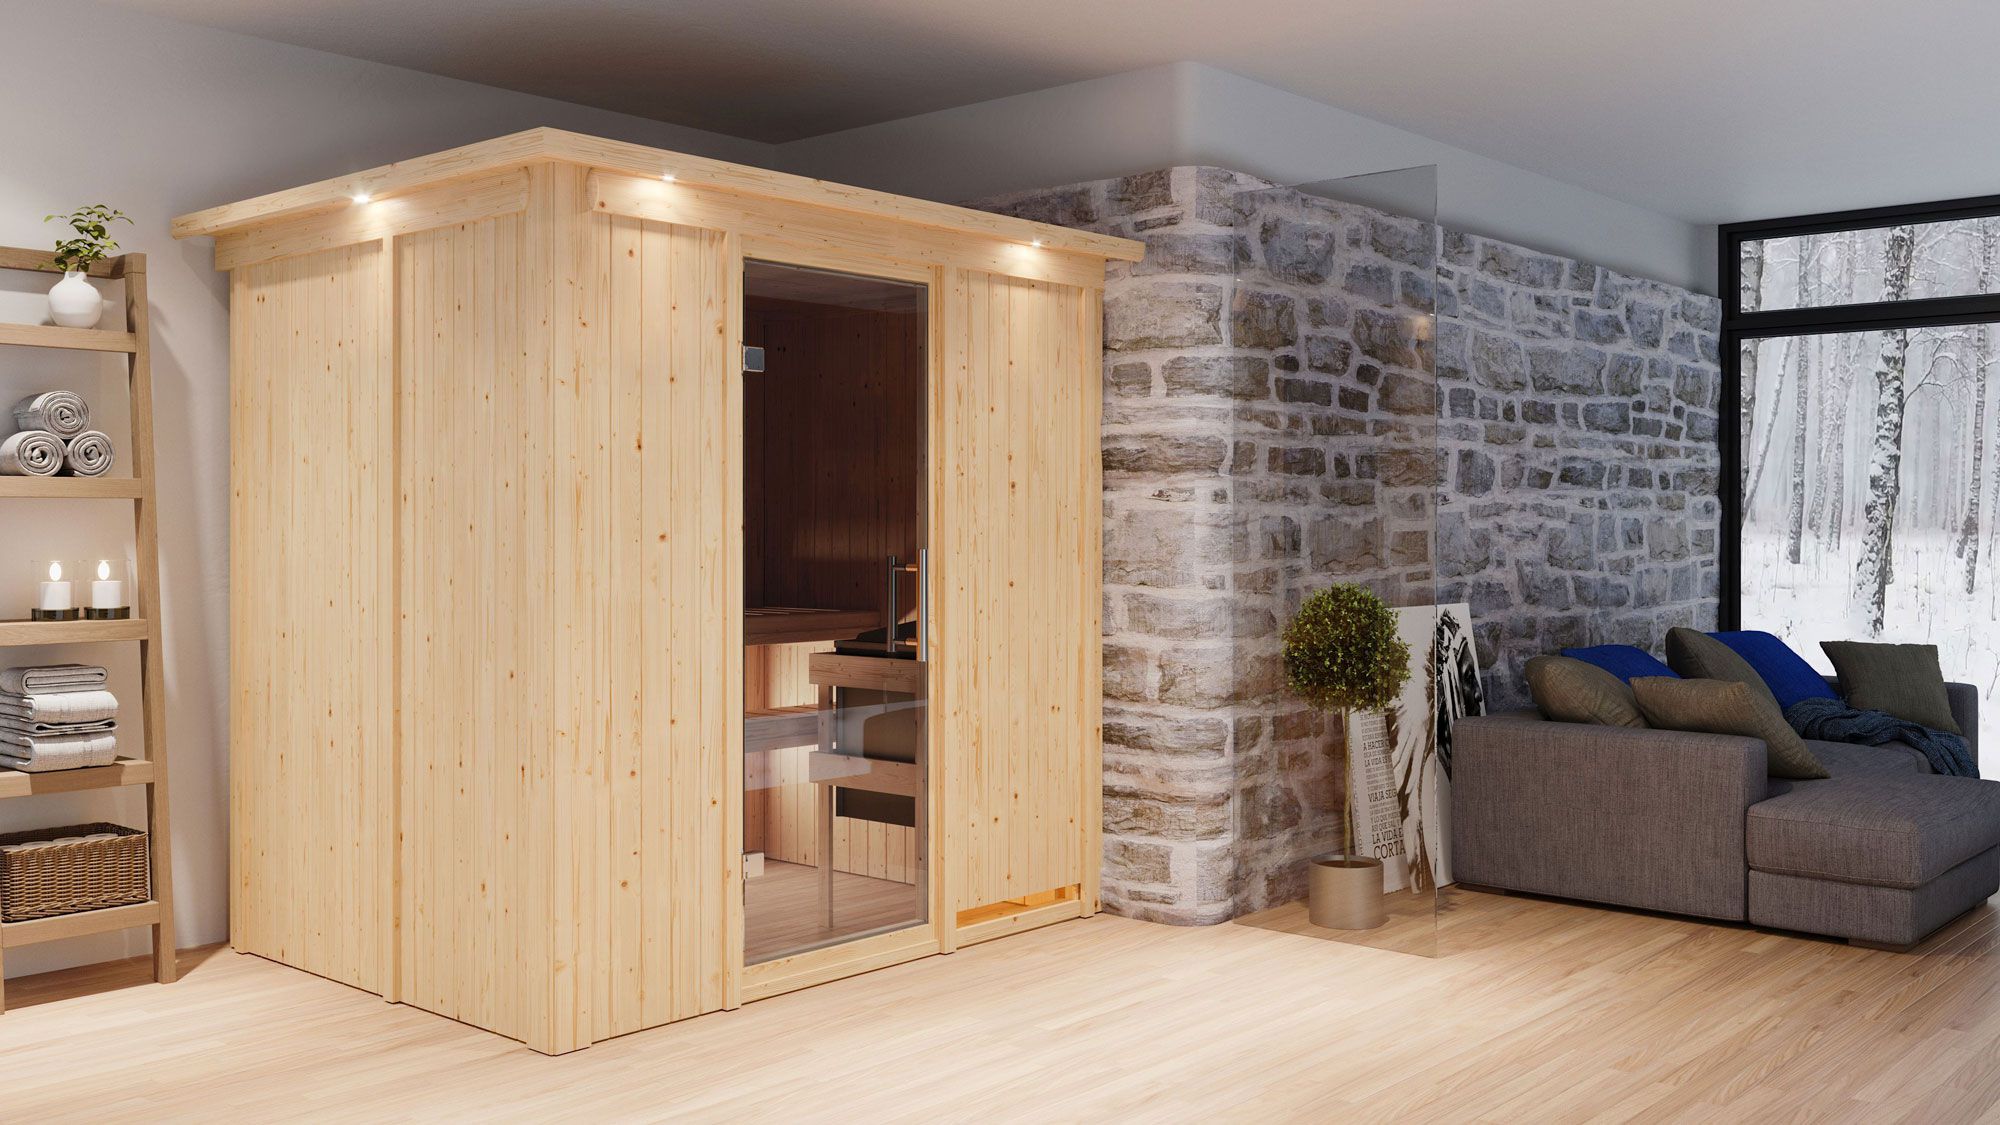 Sauna "Veli" SET mit graphitfarbener Tür und Kranz - Farbe: Natur, Ofen BIO 9 kW - 210 x 165 x 202 cm (B x T x H)